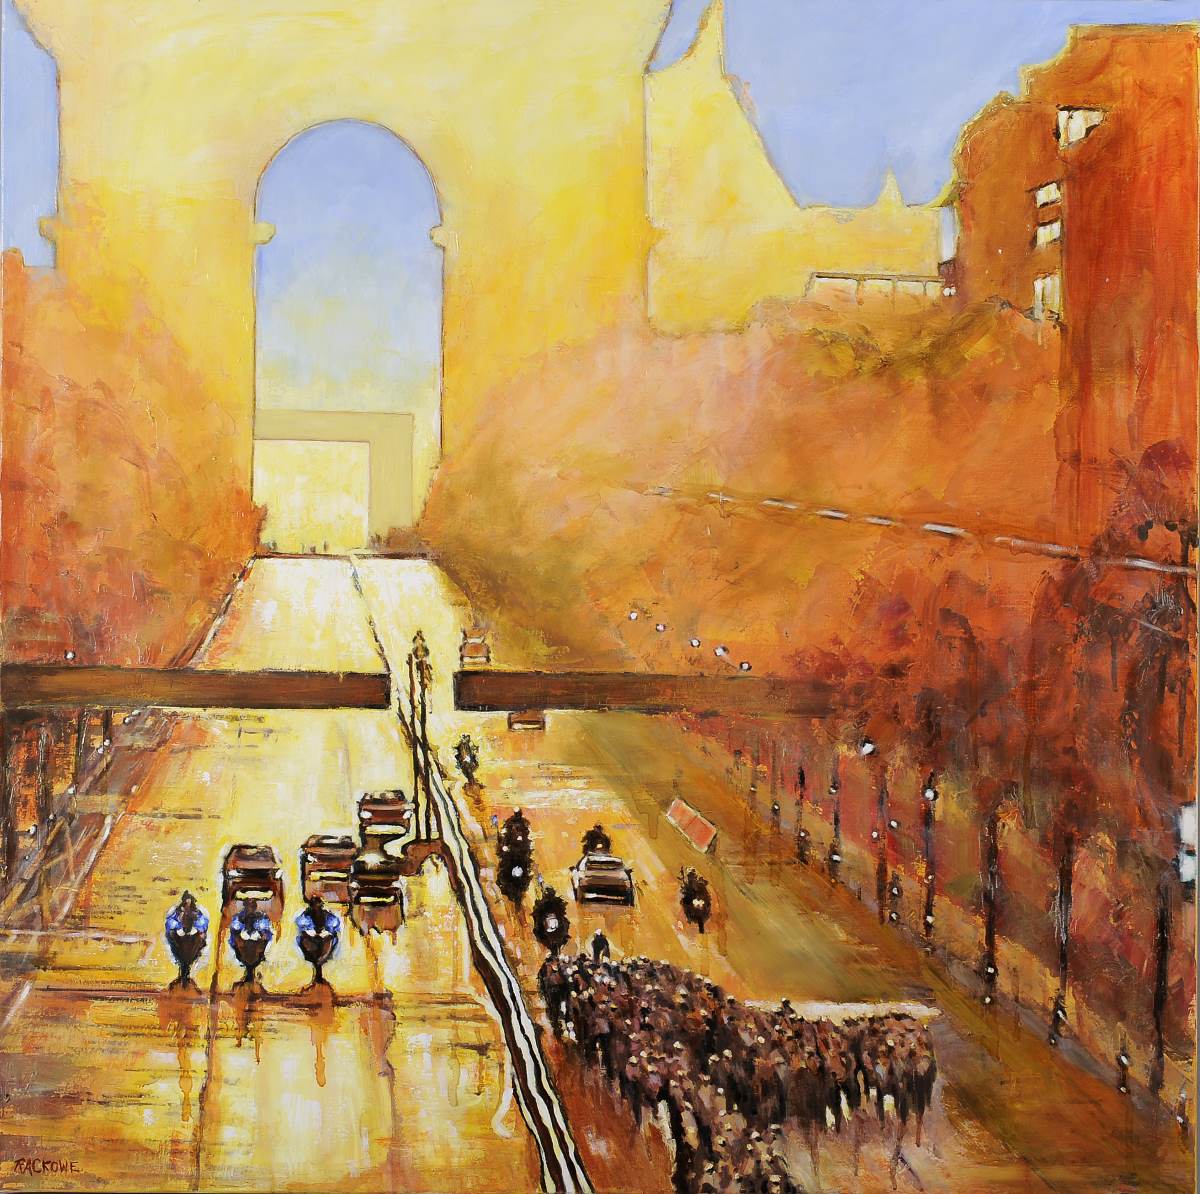 Tour de France painting by Amanda Rackowe